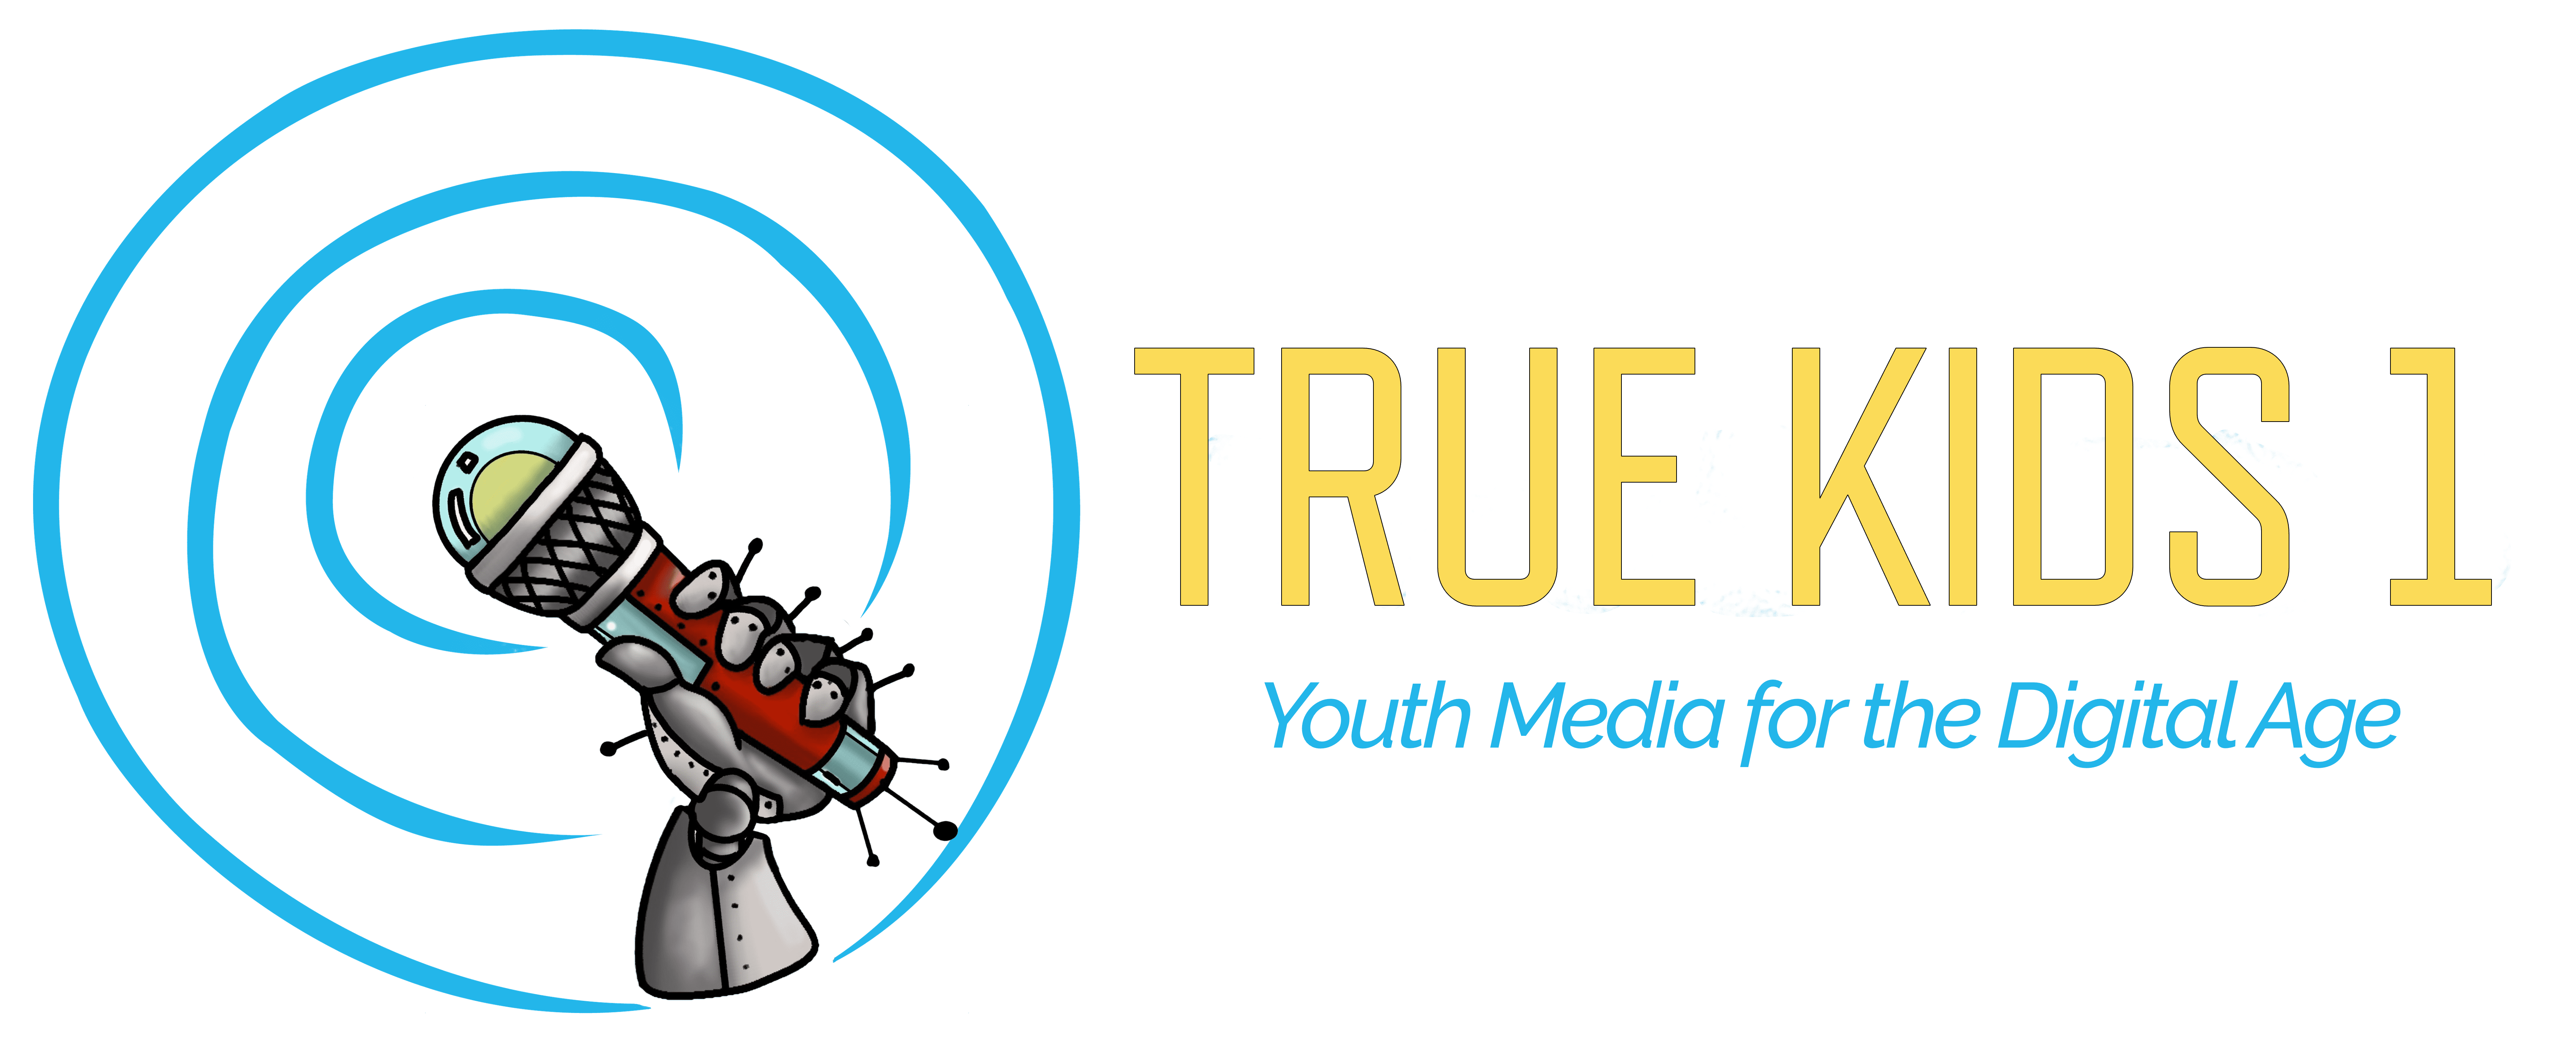 True Kids 1 Logo